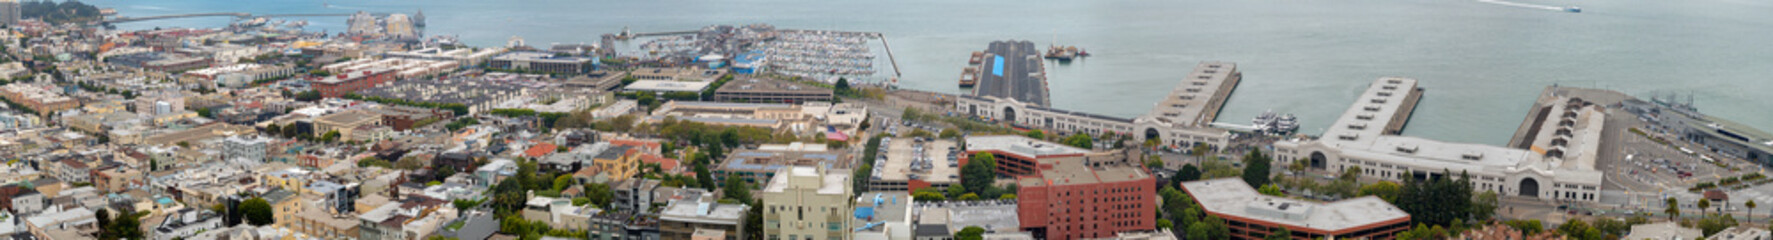 Aerial panoramic view of San Francisco promenade and Golden Gate Bridge